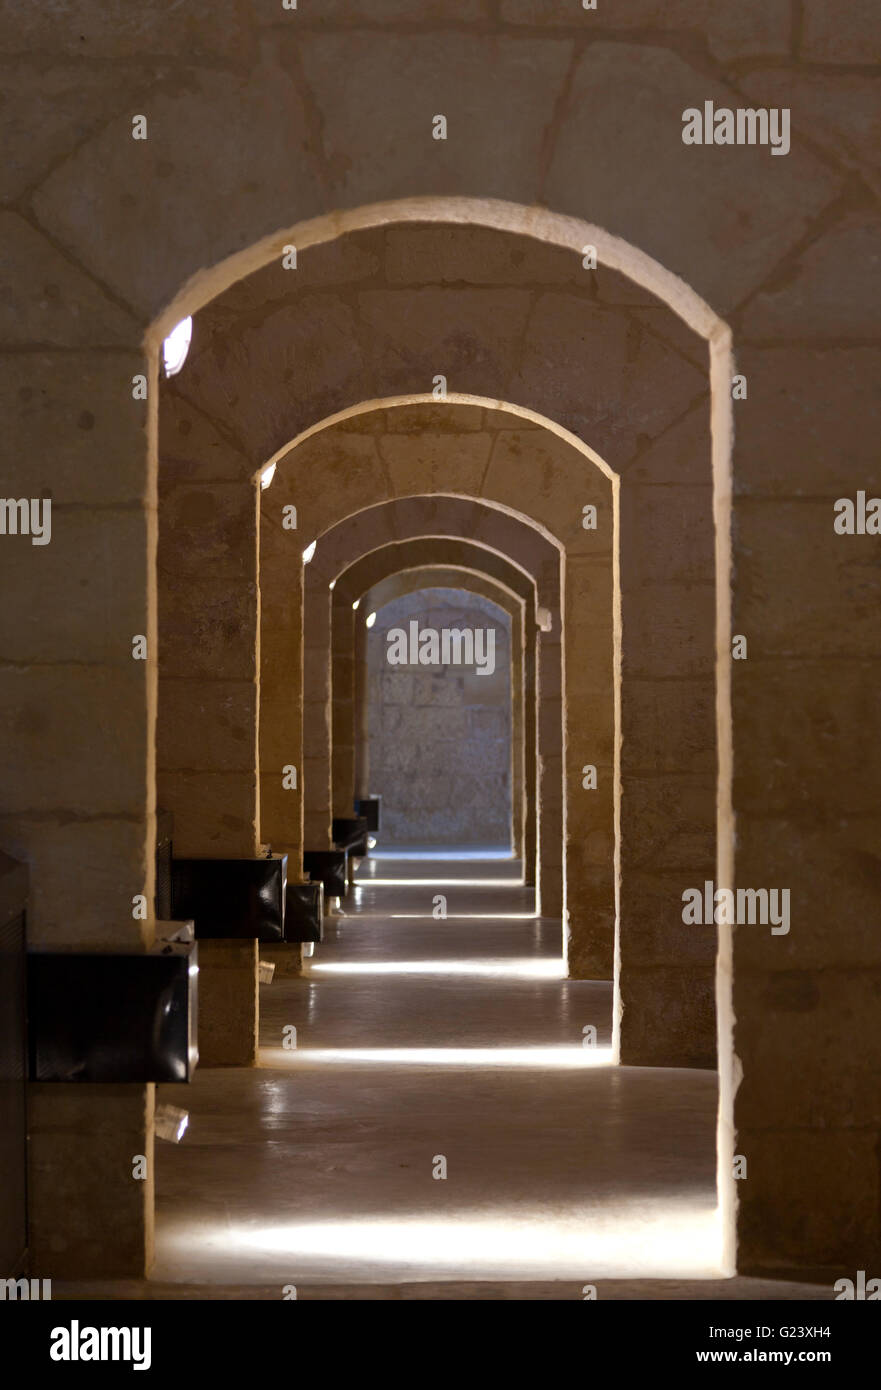 Una serie di porte collegano una fila di camere adiacenti sono sapientemente illuminati per sottolineare l'illusione di portali becomign inferiori come Foto Stock